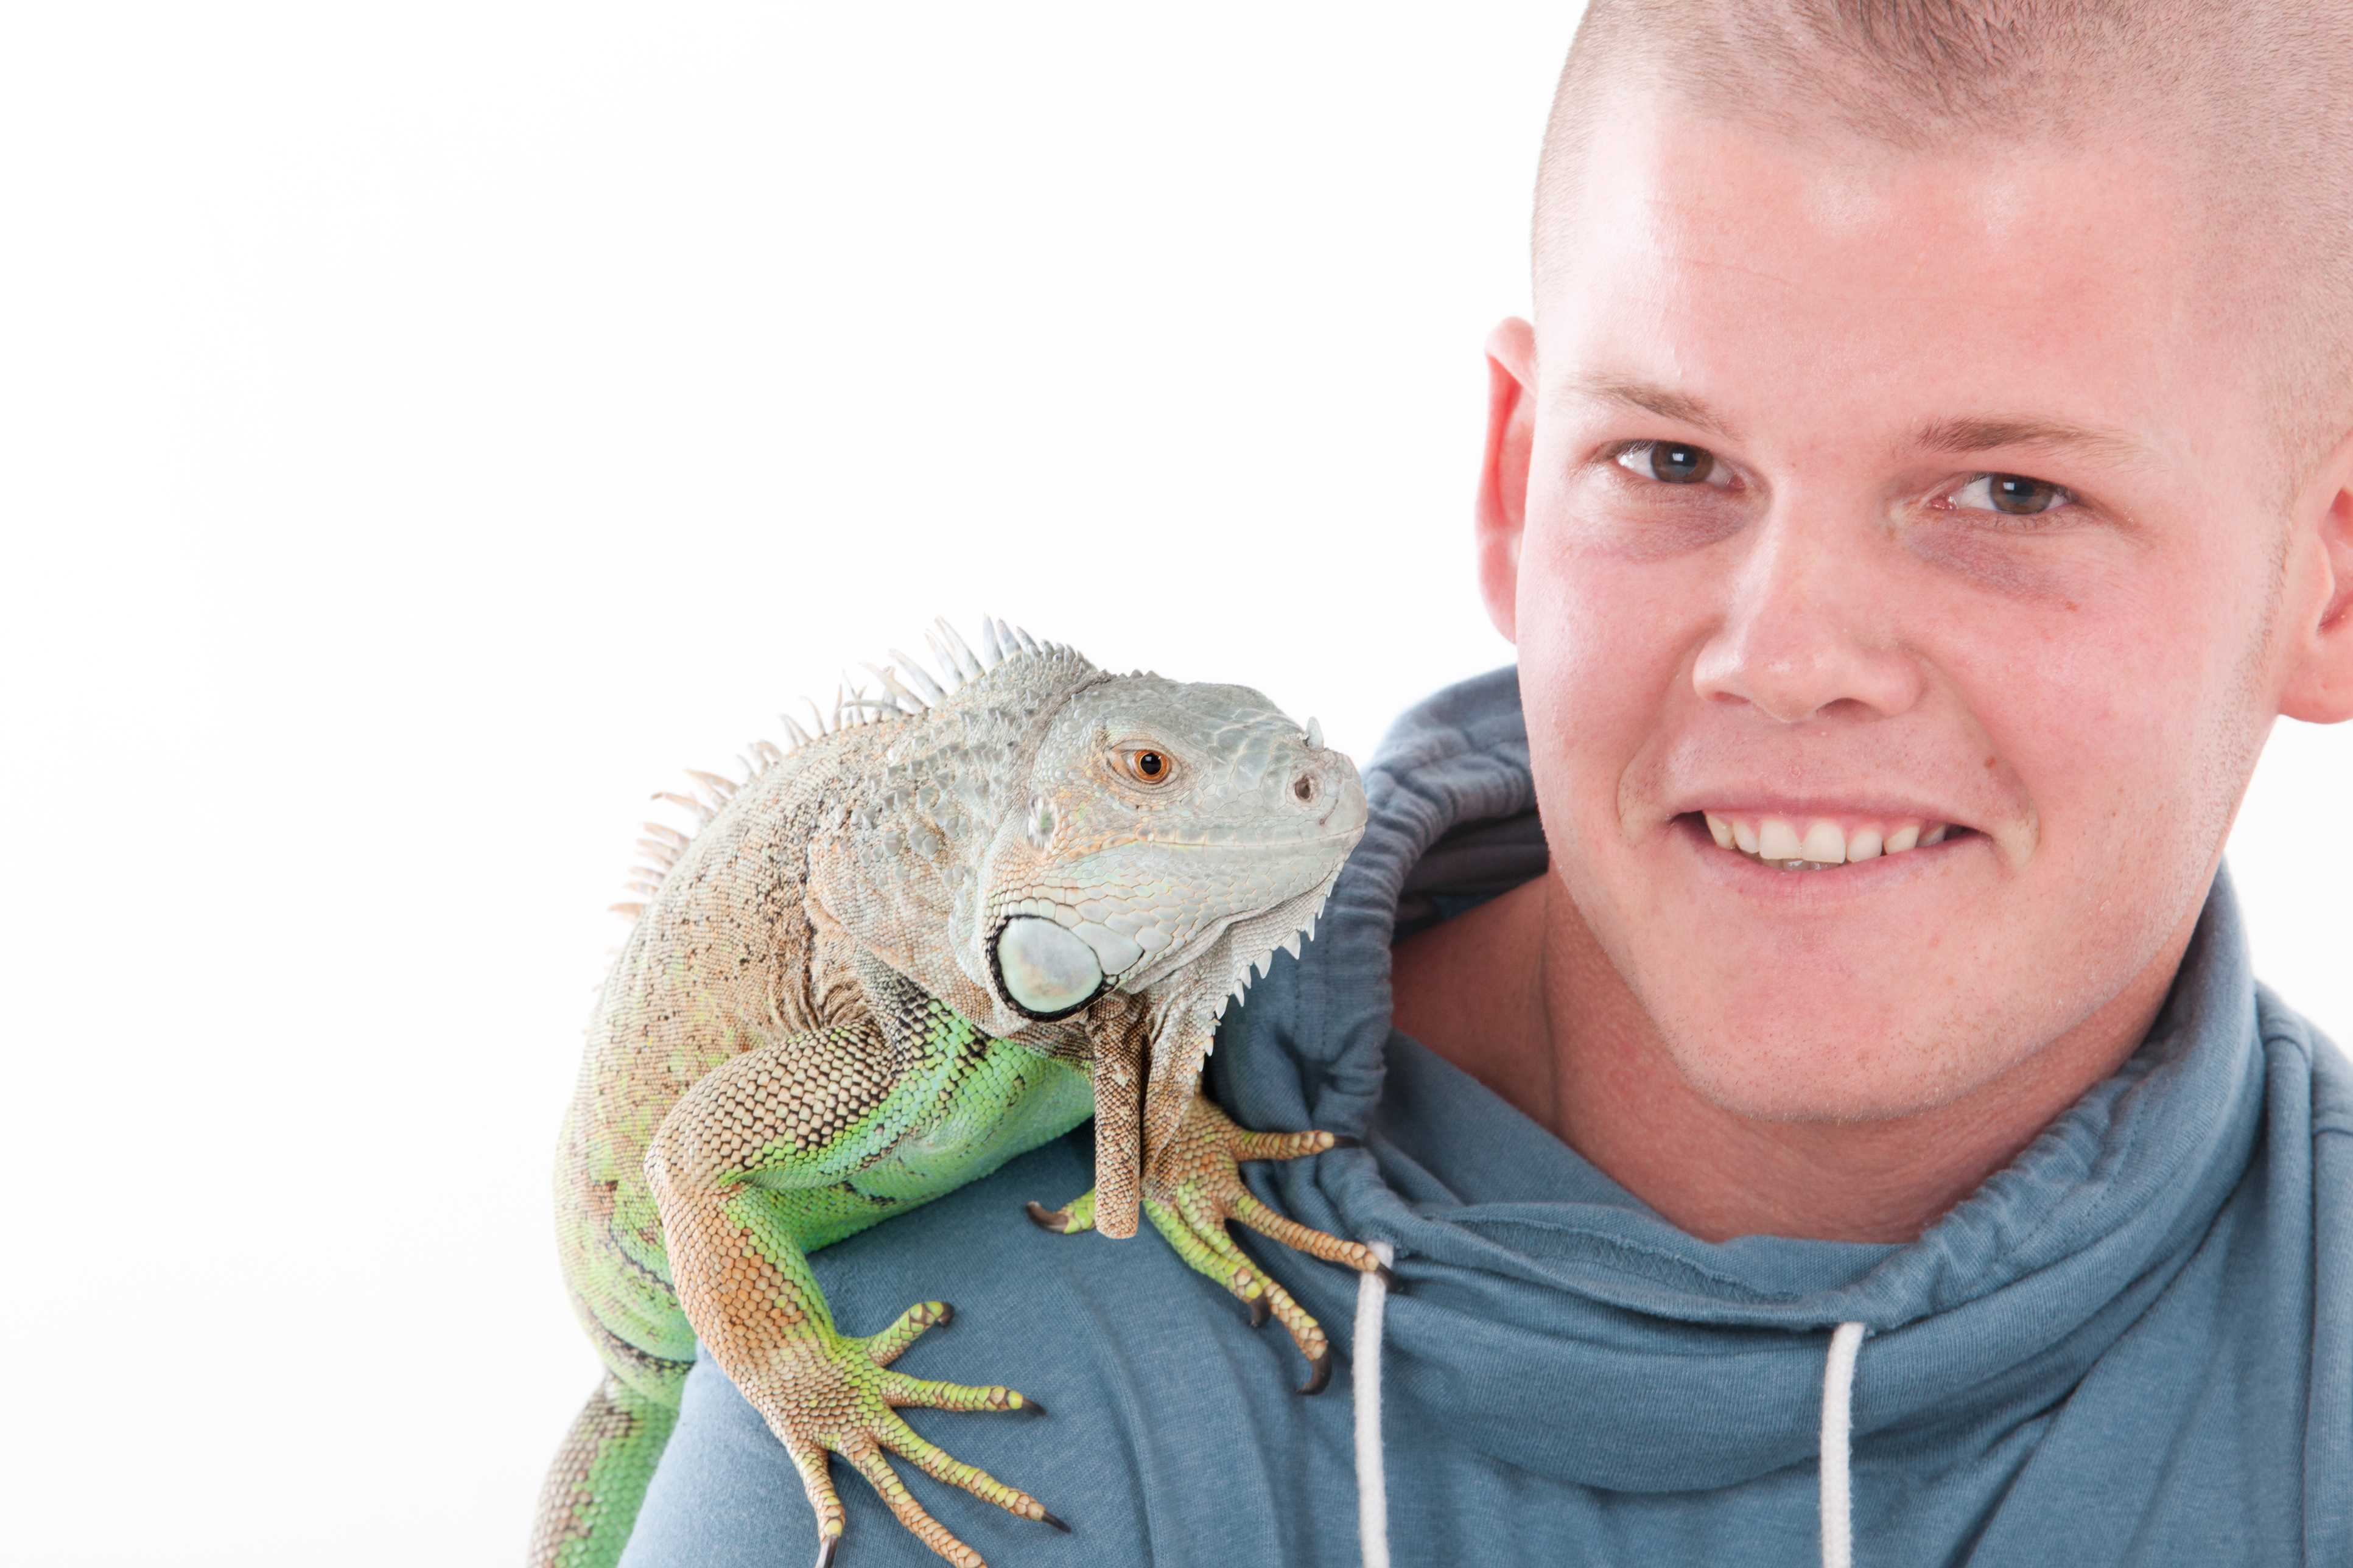 Boy With Lizard